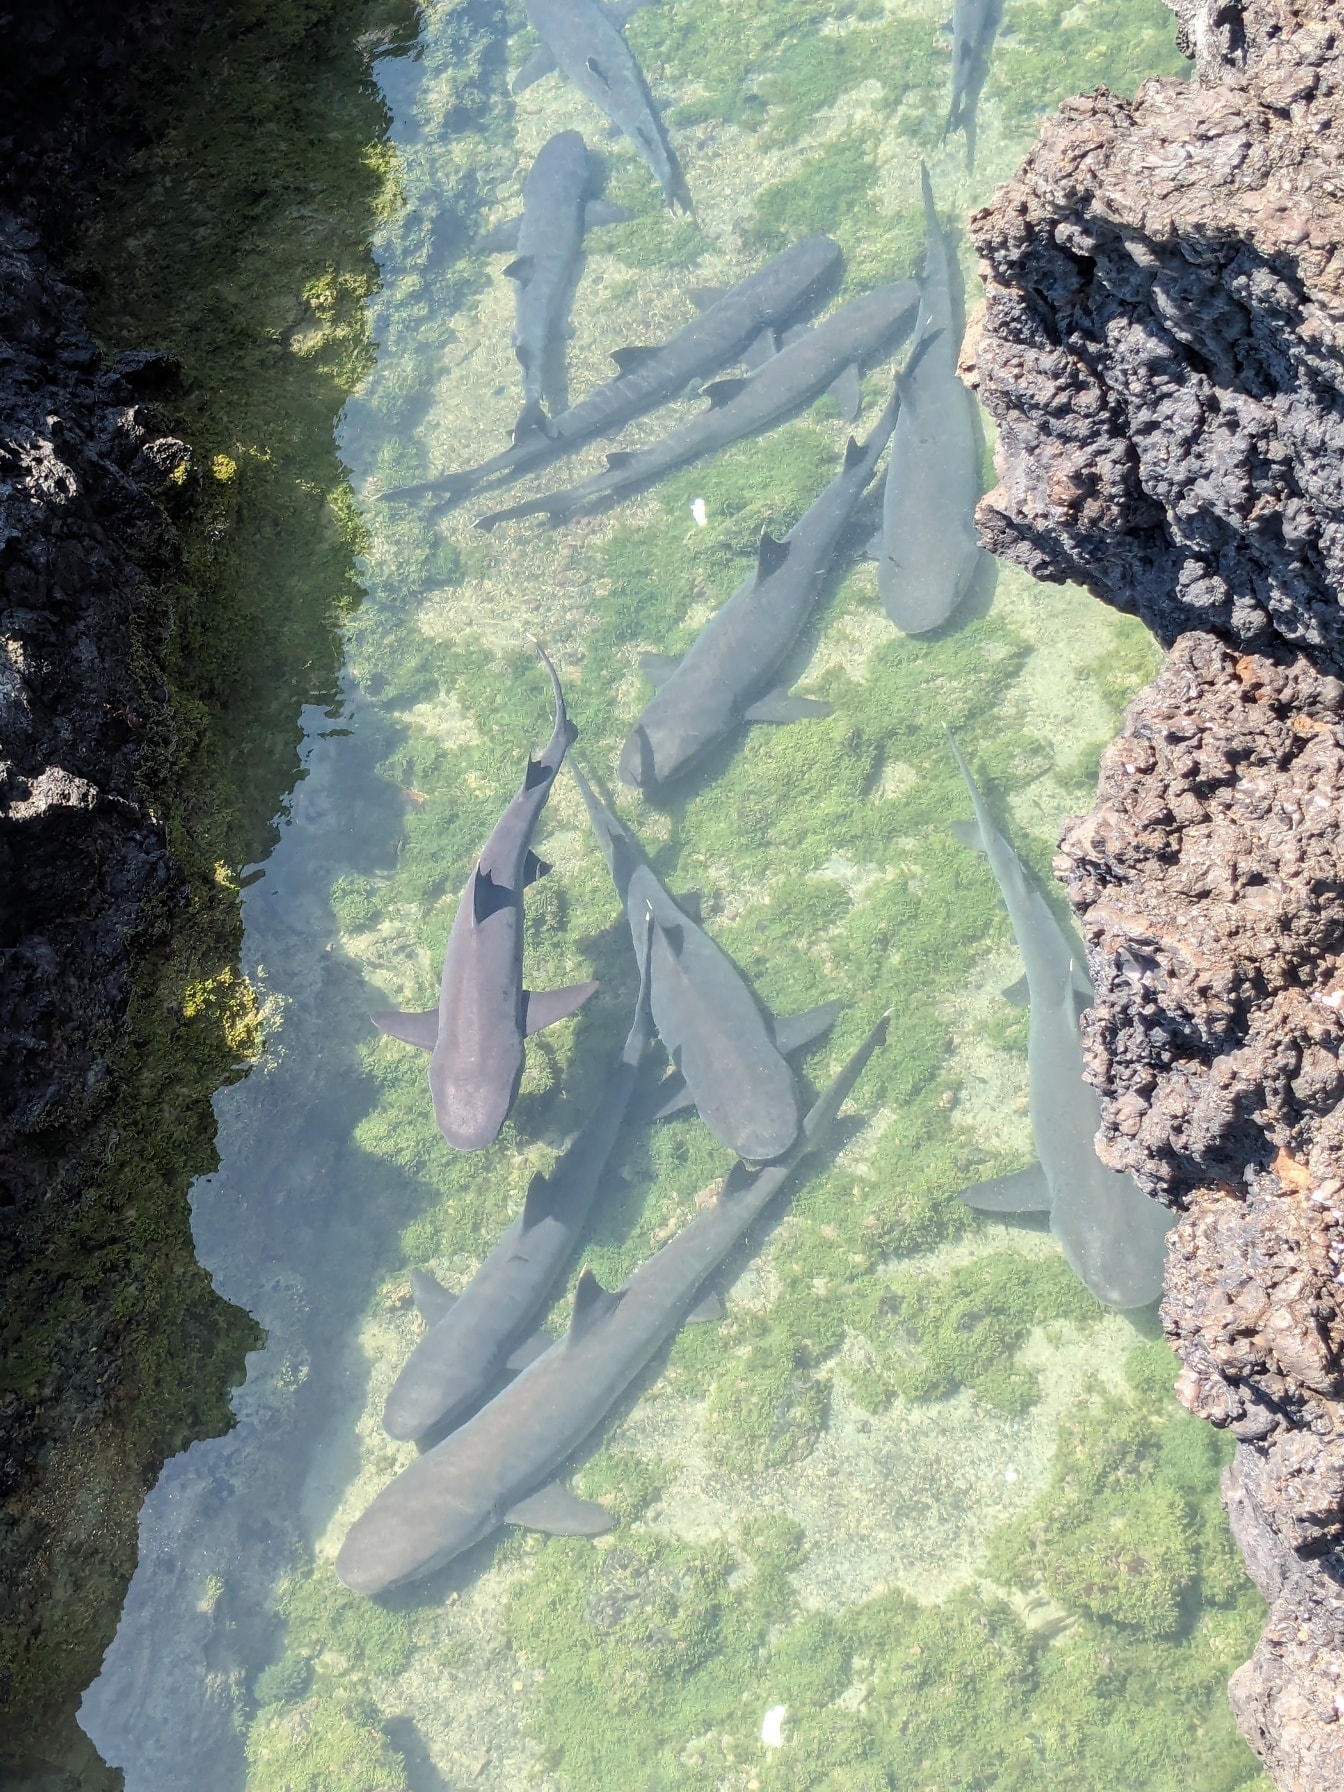 Žraloci (Ginglymostoma cirratum) ryby plavající v mělké mořské vodě obklopené mořskými skalami